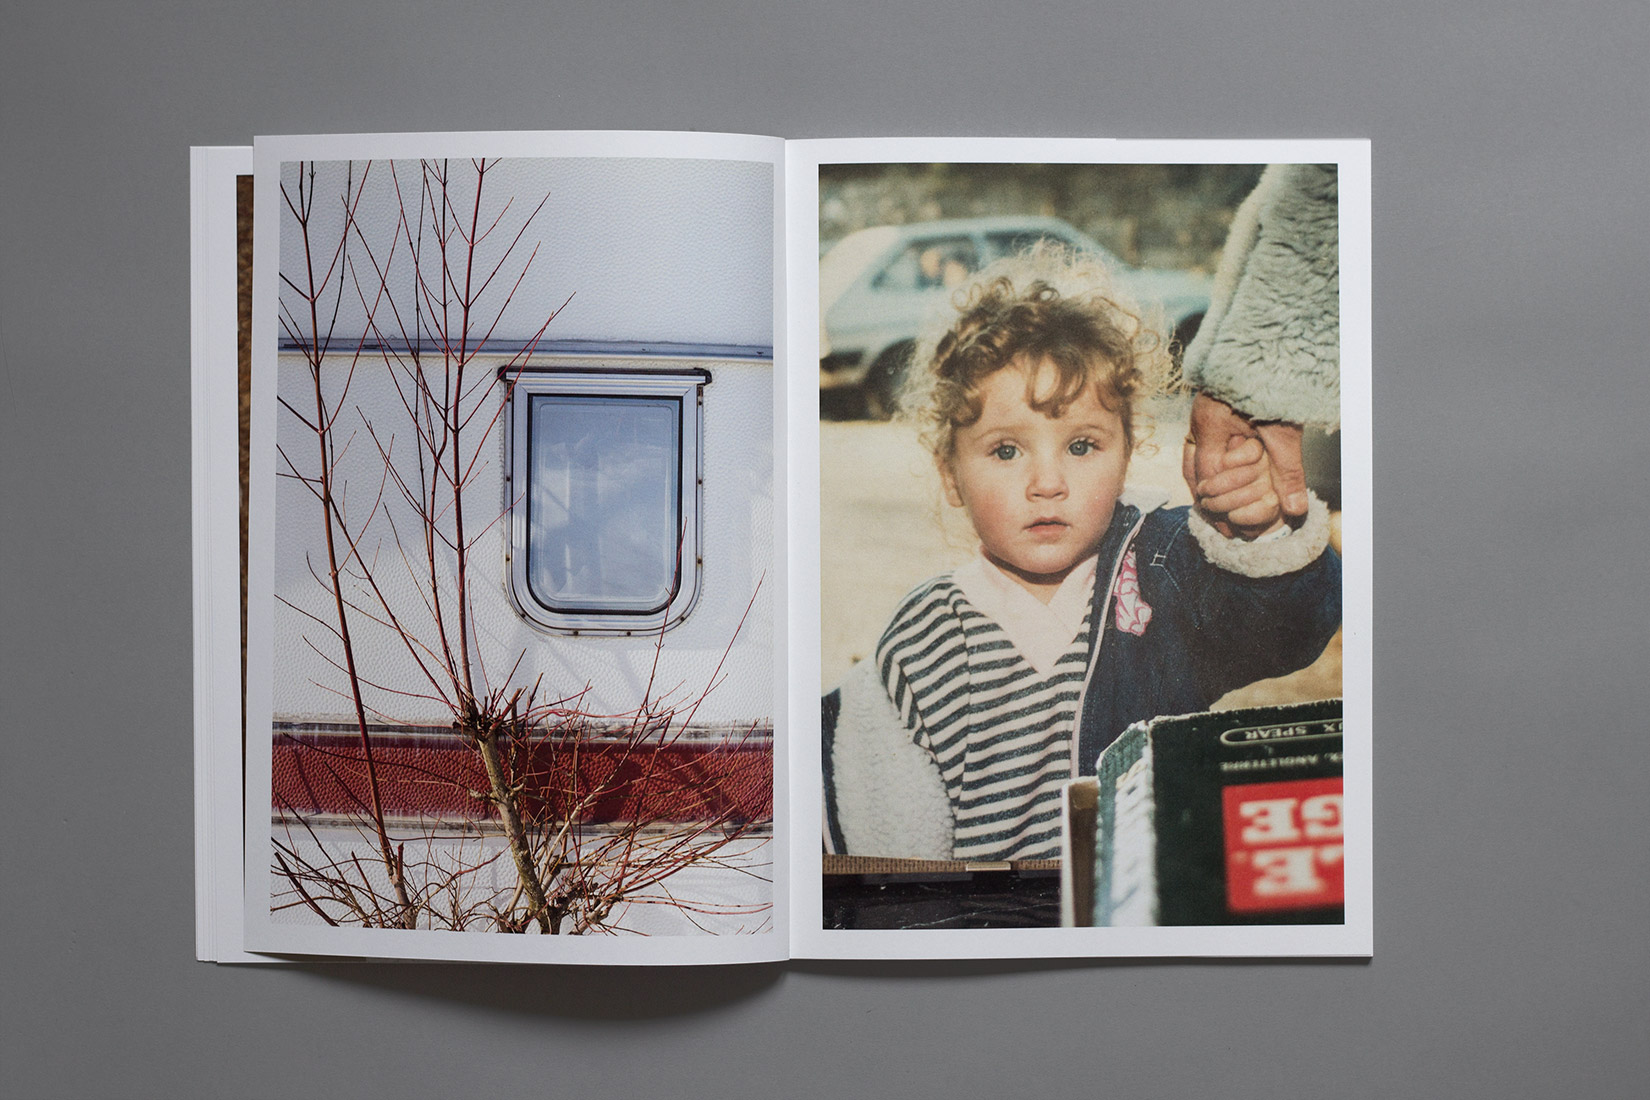 Les Brenets - Camping, fenêtre de caravane, arbre, Portrait de jeune fille tenant la main, livre, photographie